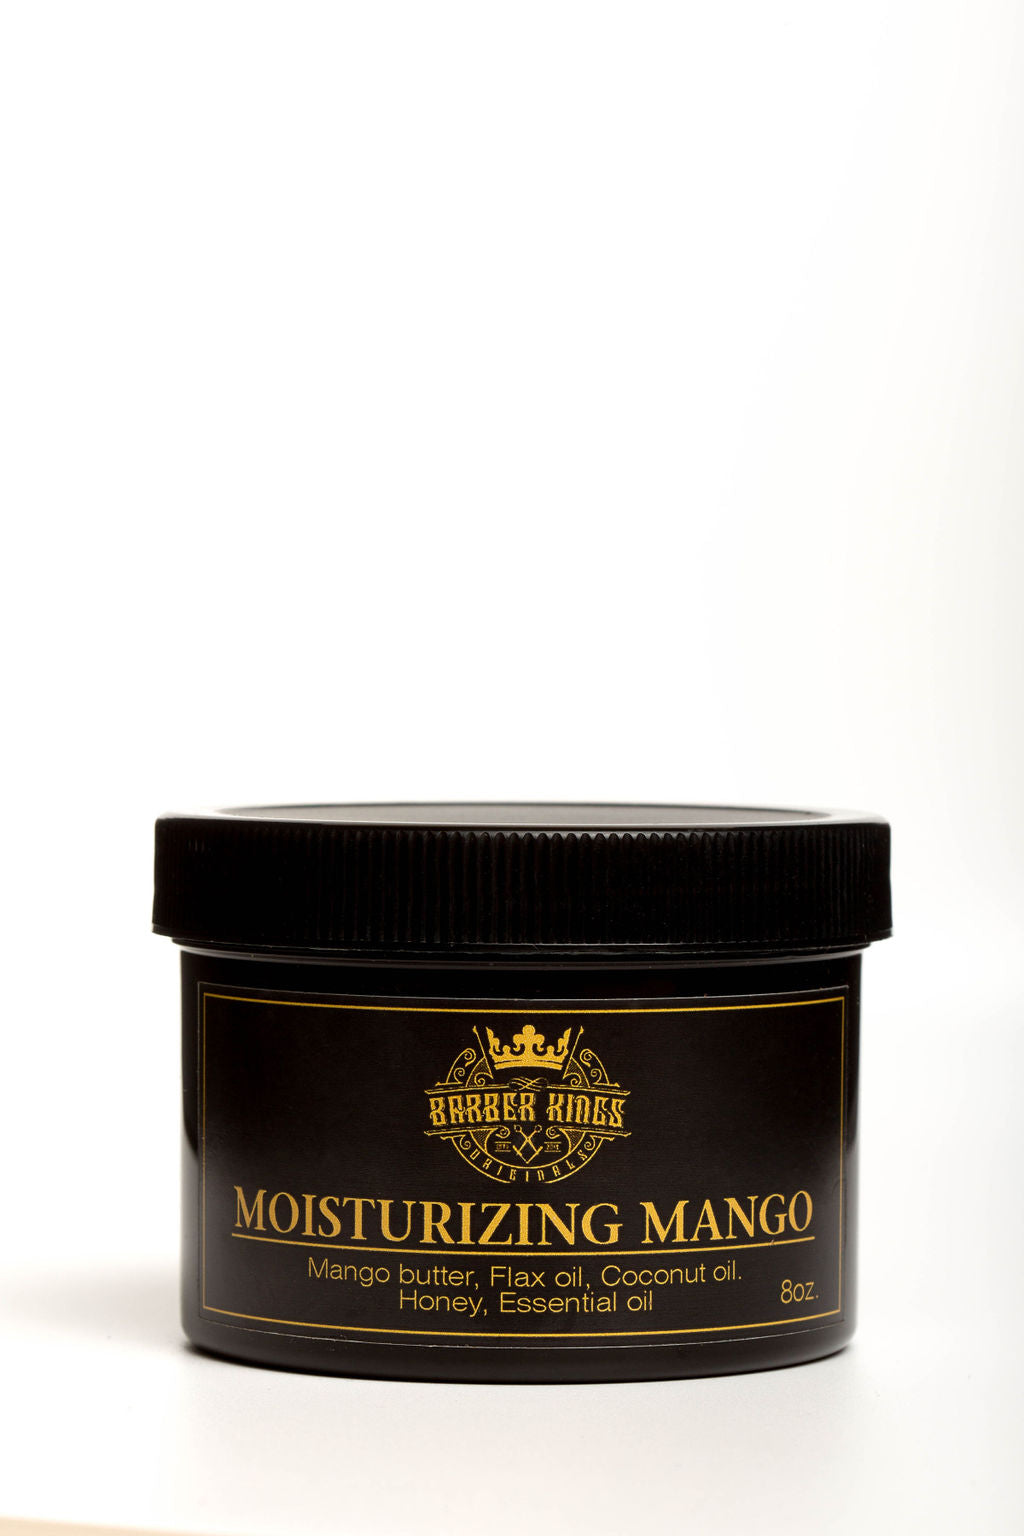 Moisturizing Mango Body Butter